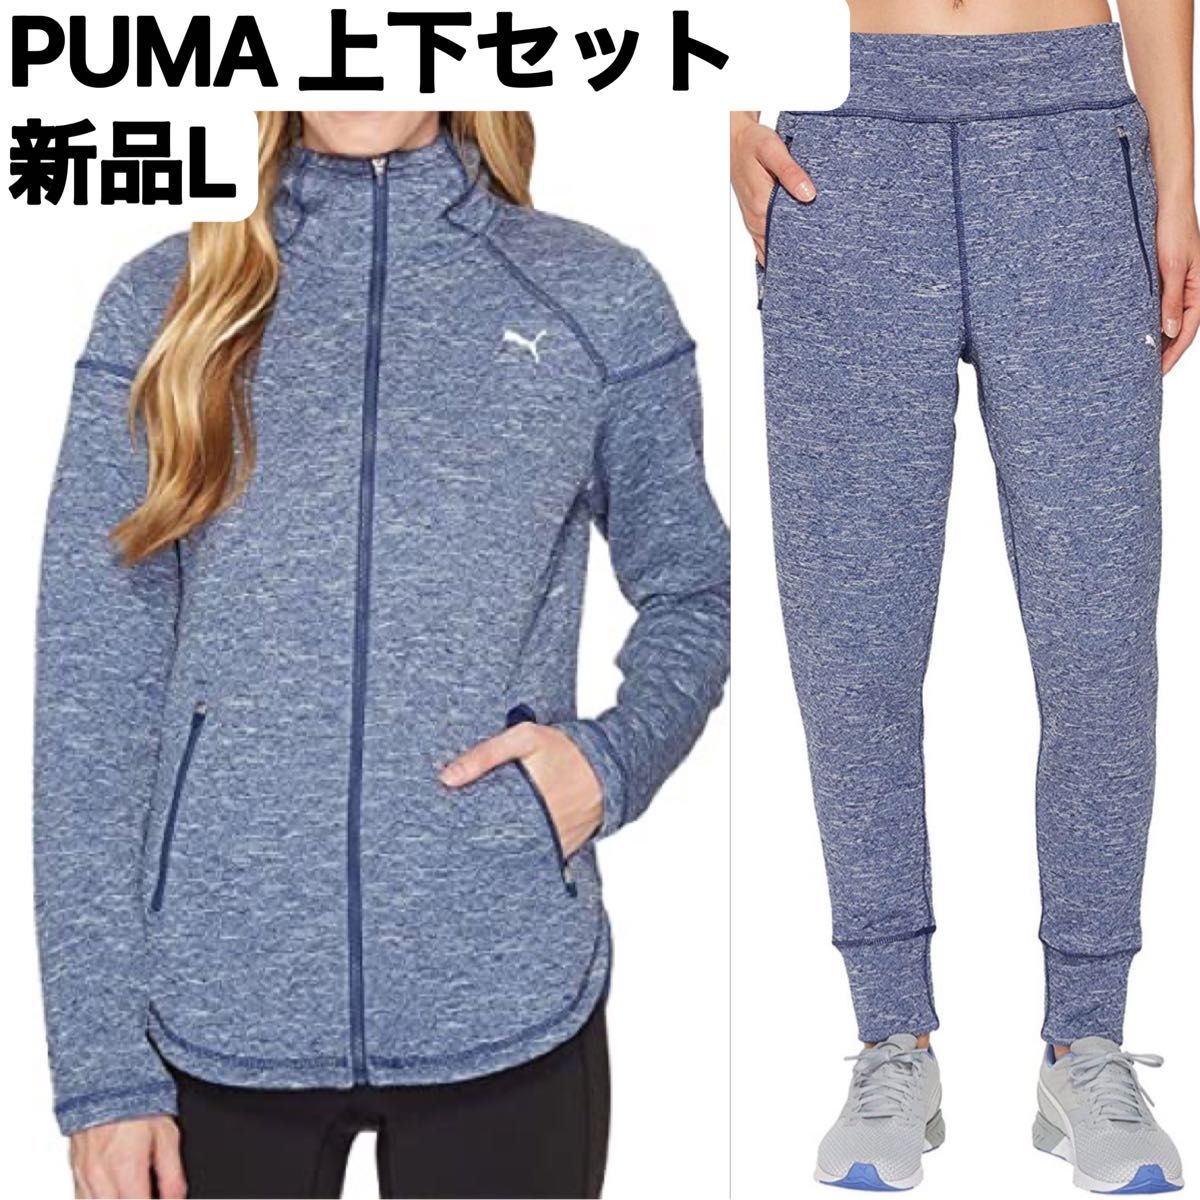 新品L PUMA ノクターナル ウィンタライズドジャケット&パンツの上下セット 上下セット